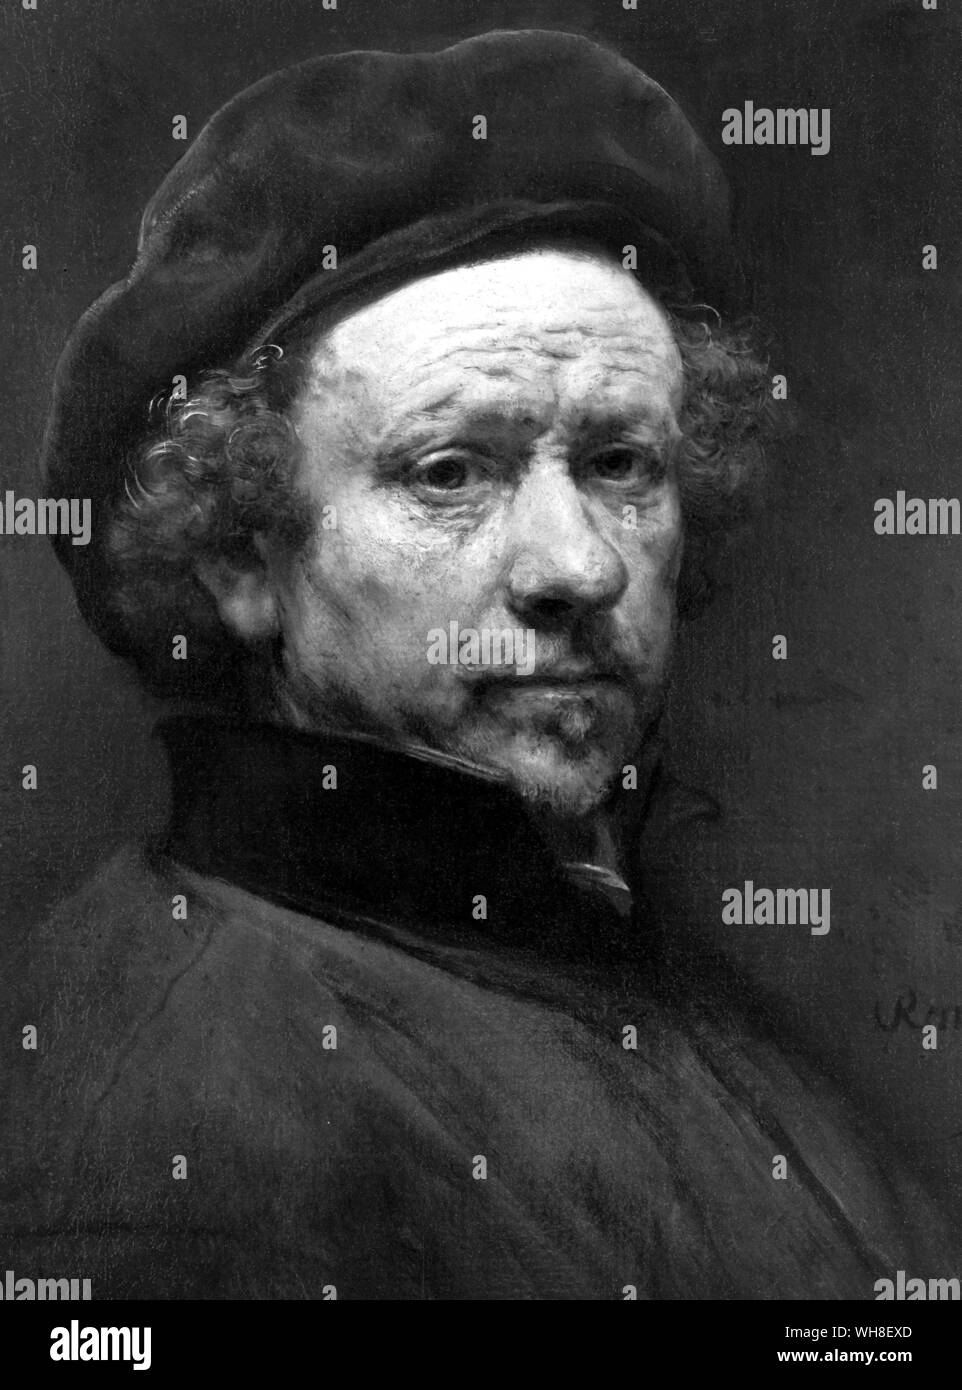 Harmensz van Rijn Rembrandt (1606-1699), pittore olandese e incisore. Foto Stock